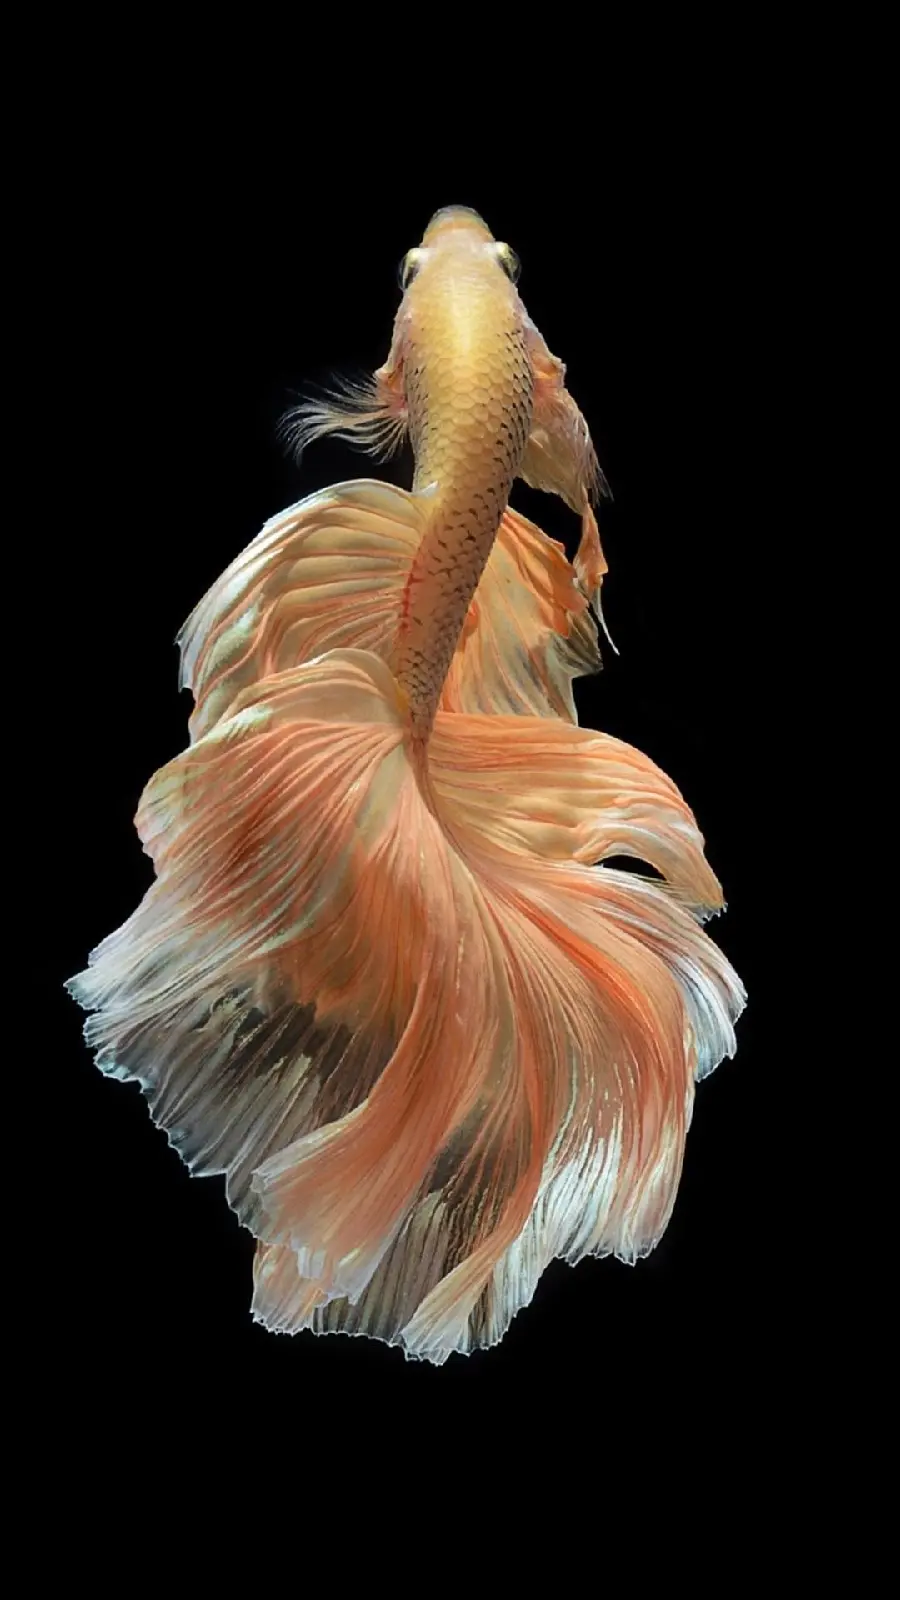 عکس ماهی با باله های ظریف و جذاب با کیفیت فوق العاده